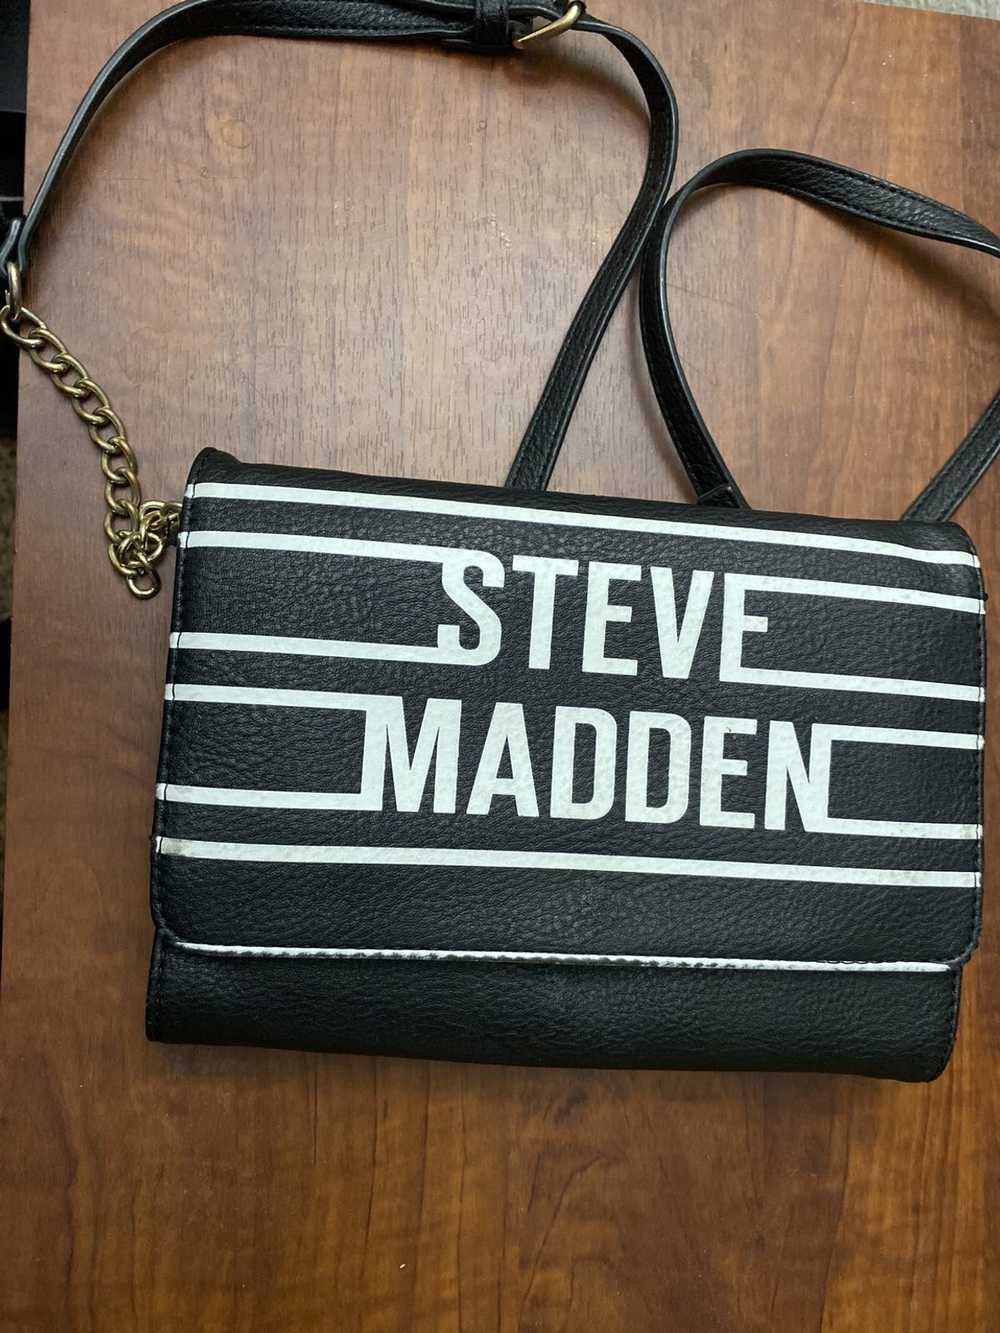 Steve Madden Steve Madden mini purse - image 1